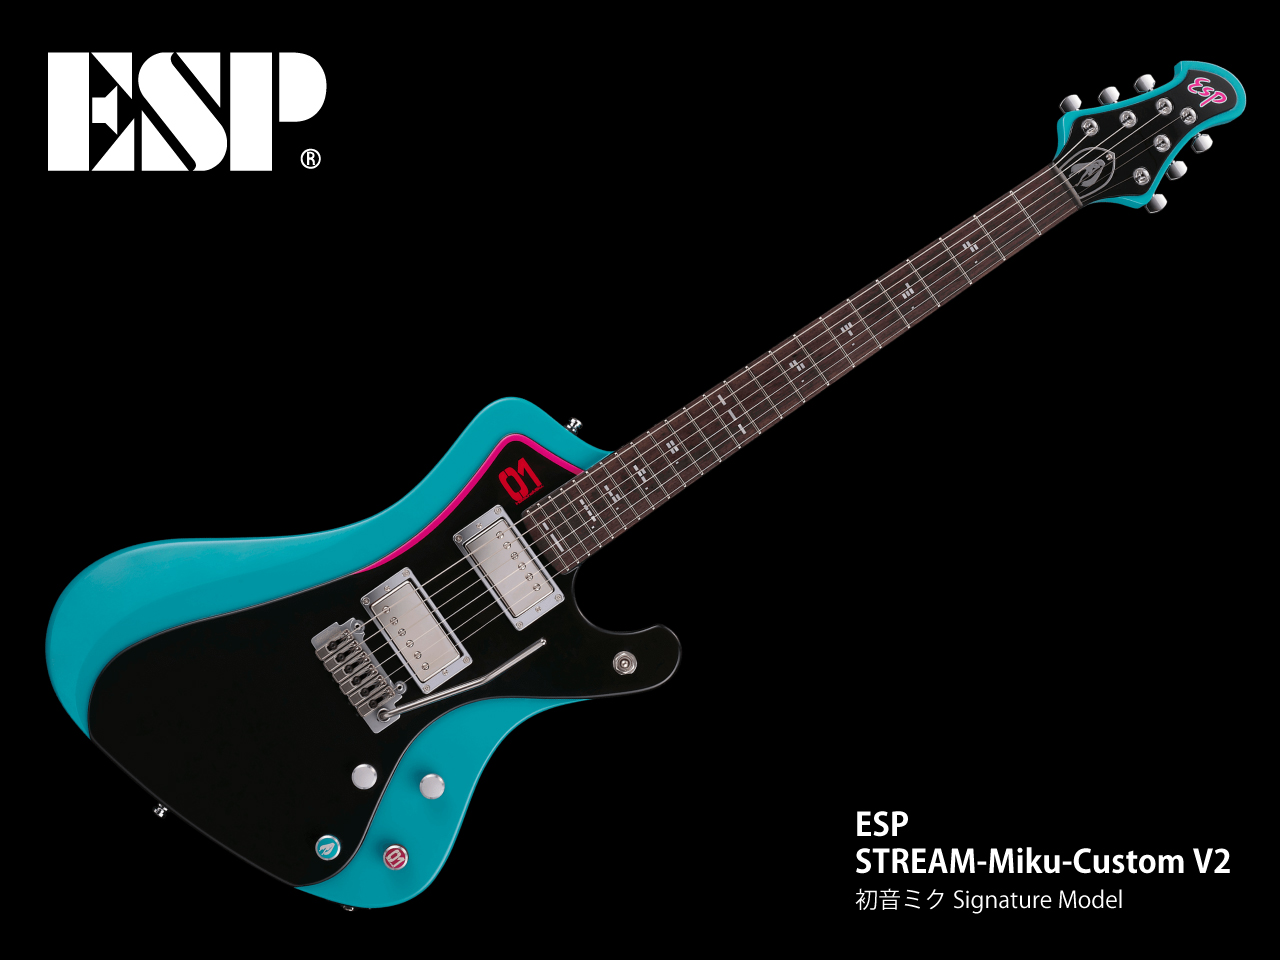 ESP STREAM-Miku-Custom V2